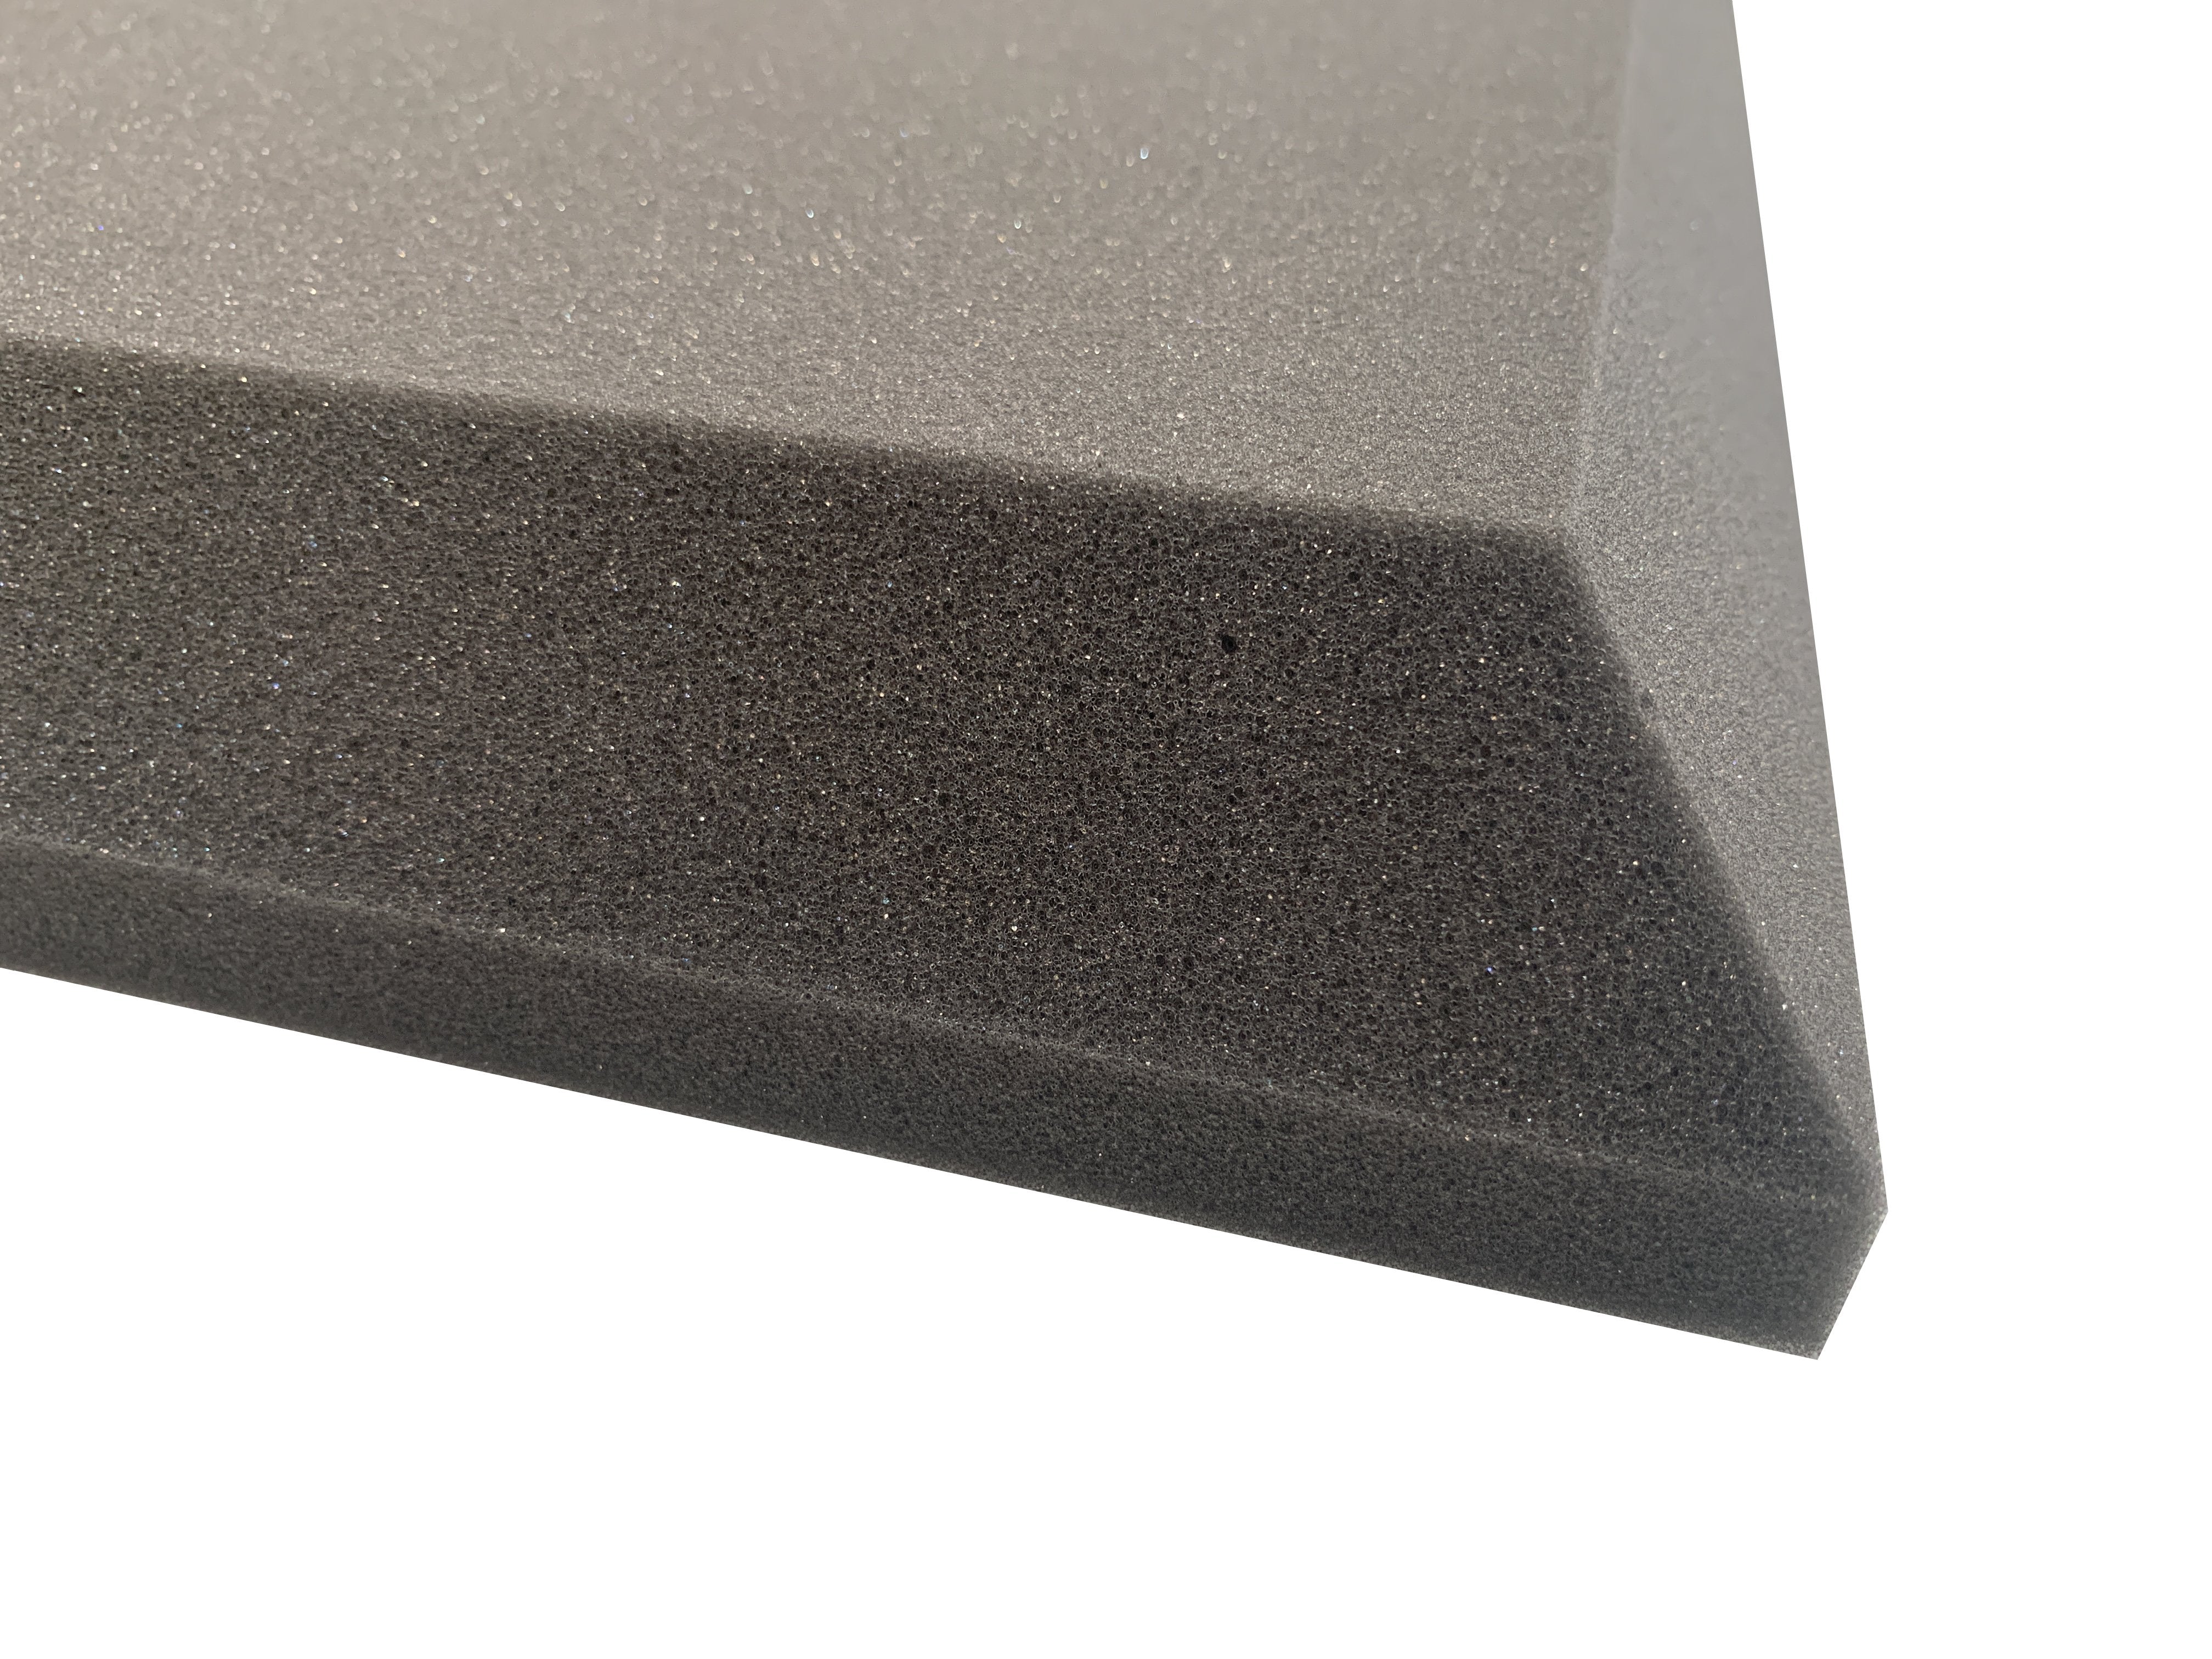 Tri-Panel 24" Acoustic Studio Foam Tile Pack - Advanced Acoustics